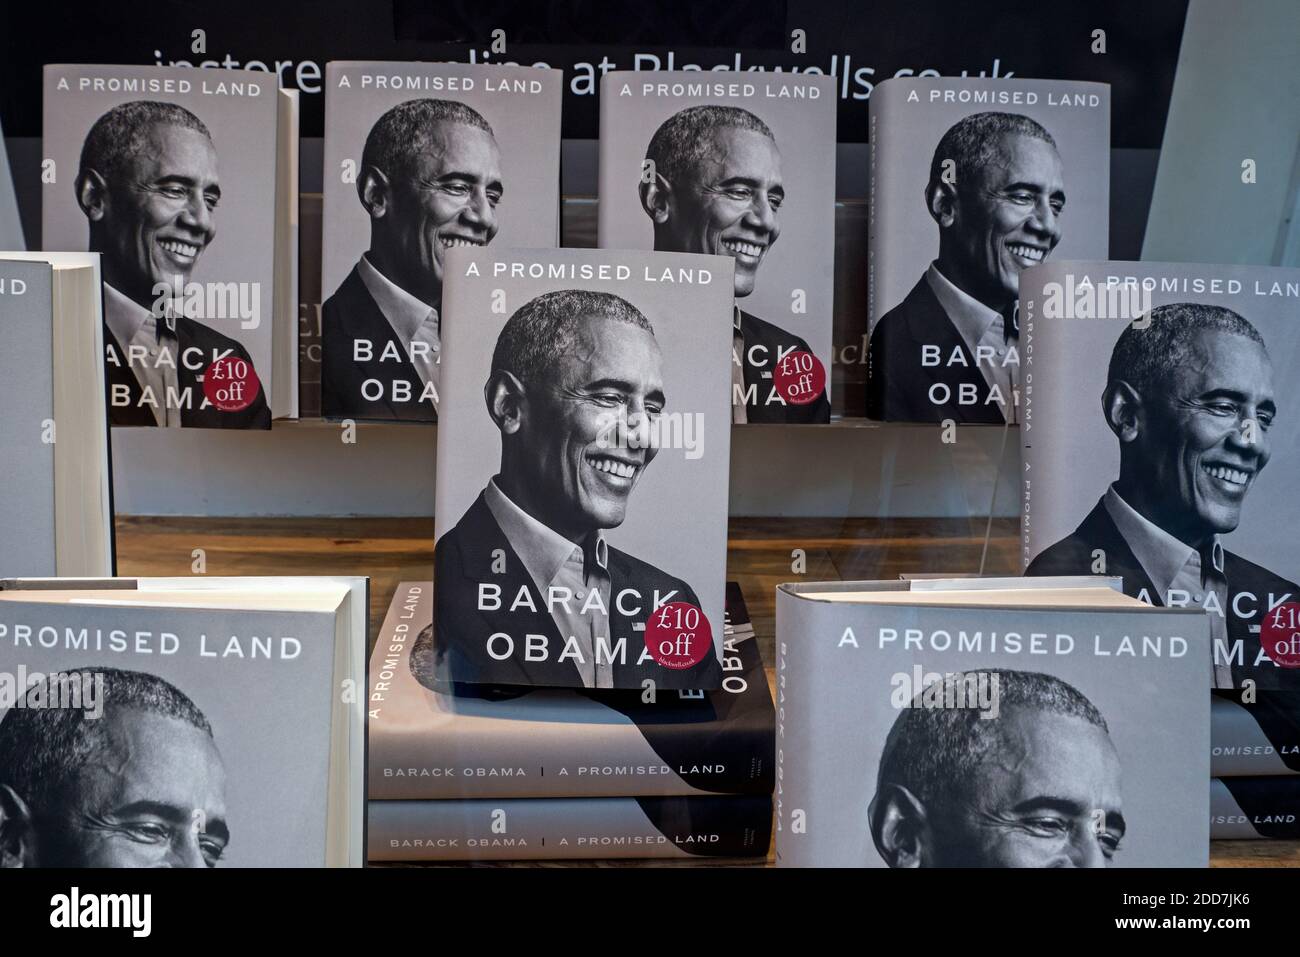 Kopien von Barack Obamas Memoiren "A Promised Land", die im Fenster einer Buchhandlung in Edinburgh, Schottland, Großbritannien, gezeigt wurden. Stockfoto